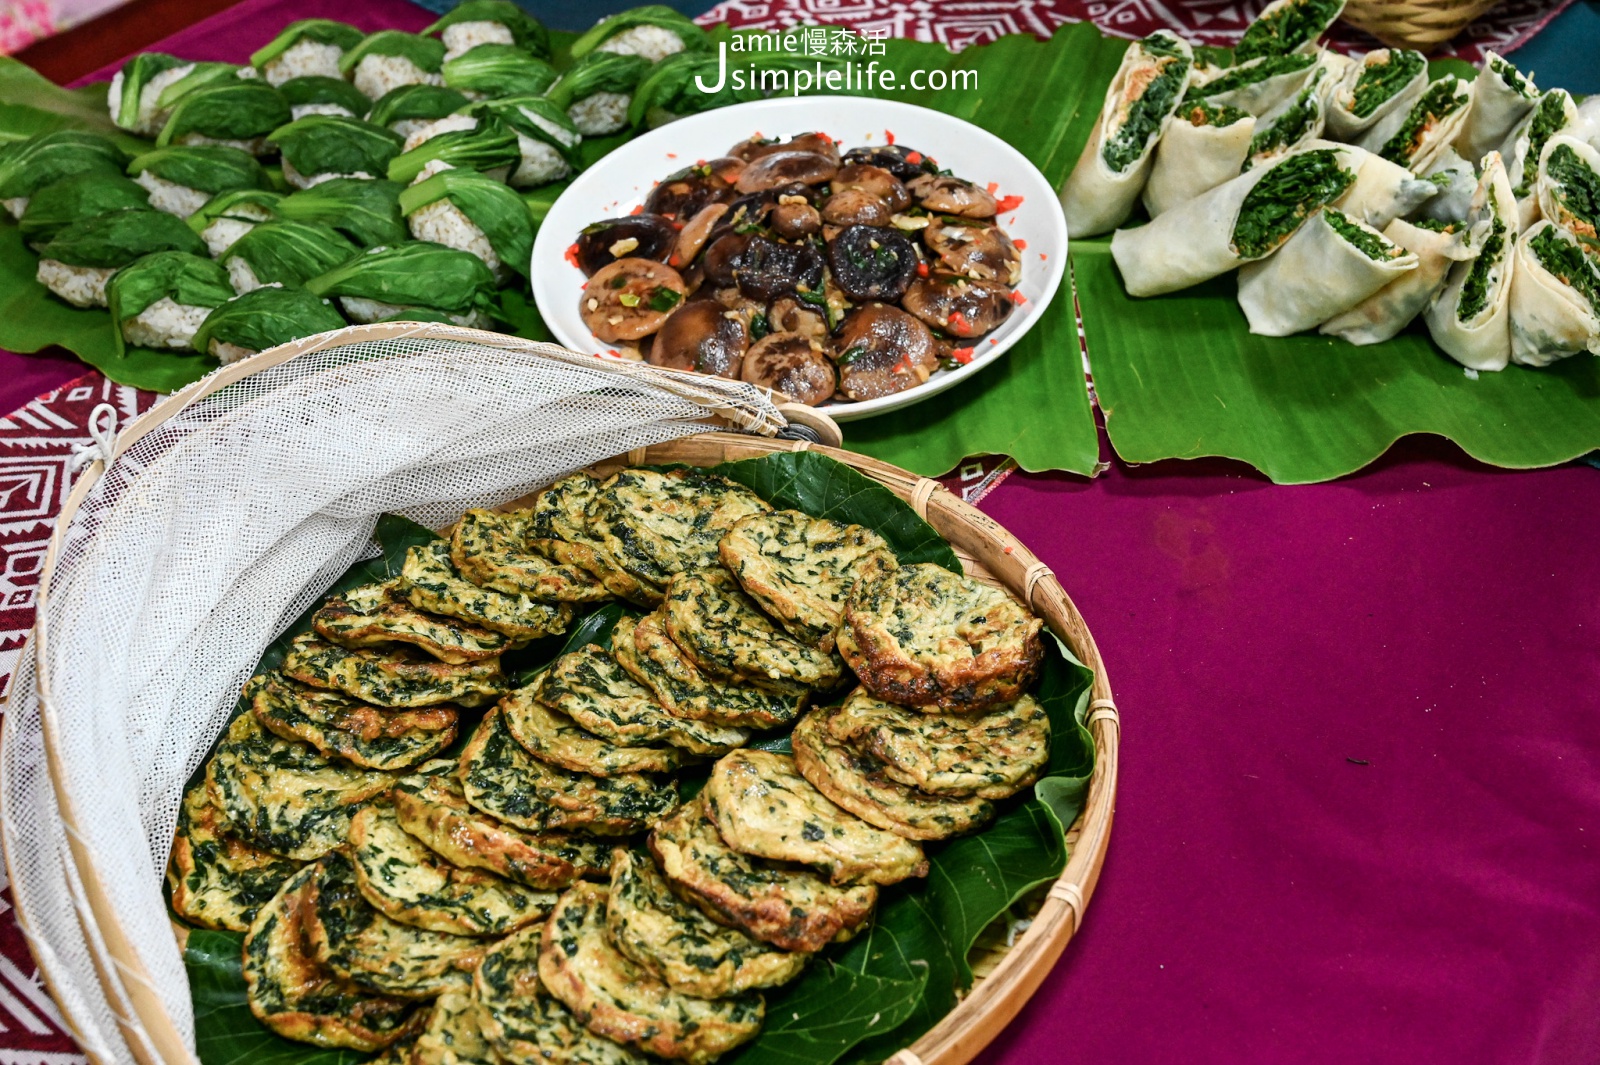 屏東恆春鎮 牡丹鄉 高士社區發展協會 準備的一桌在地風味料理